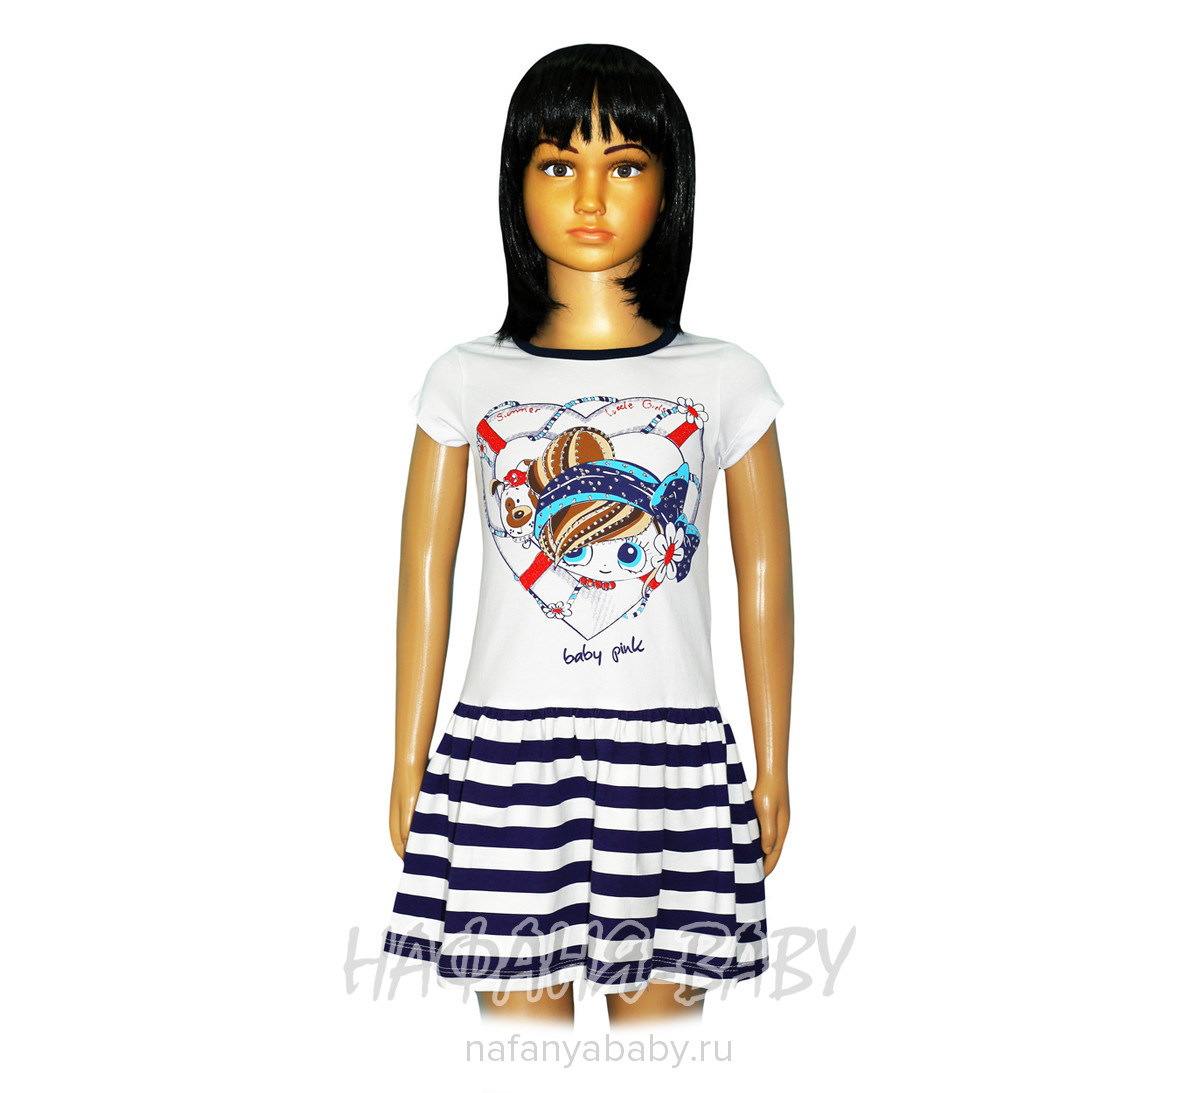 Детское платье BABY PINK, купить в интернет магазине Нафаня. арт: 4118.